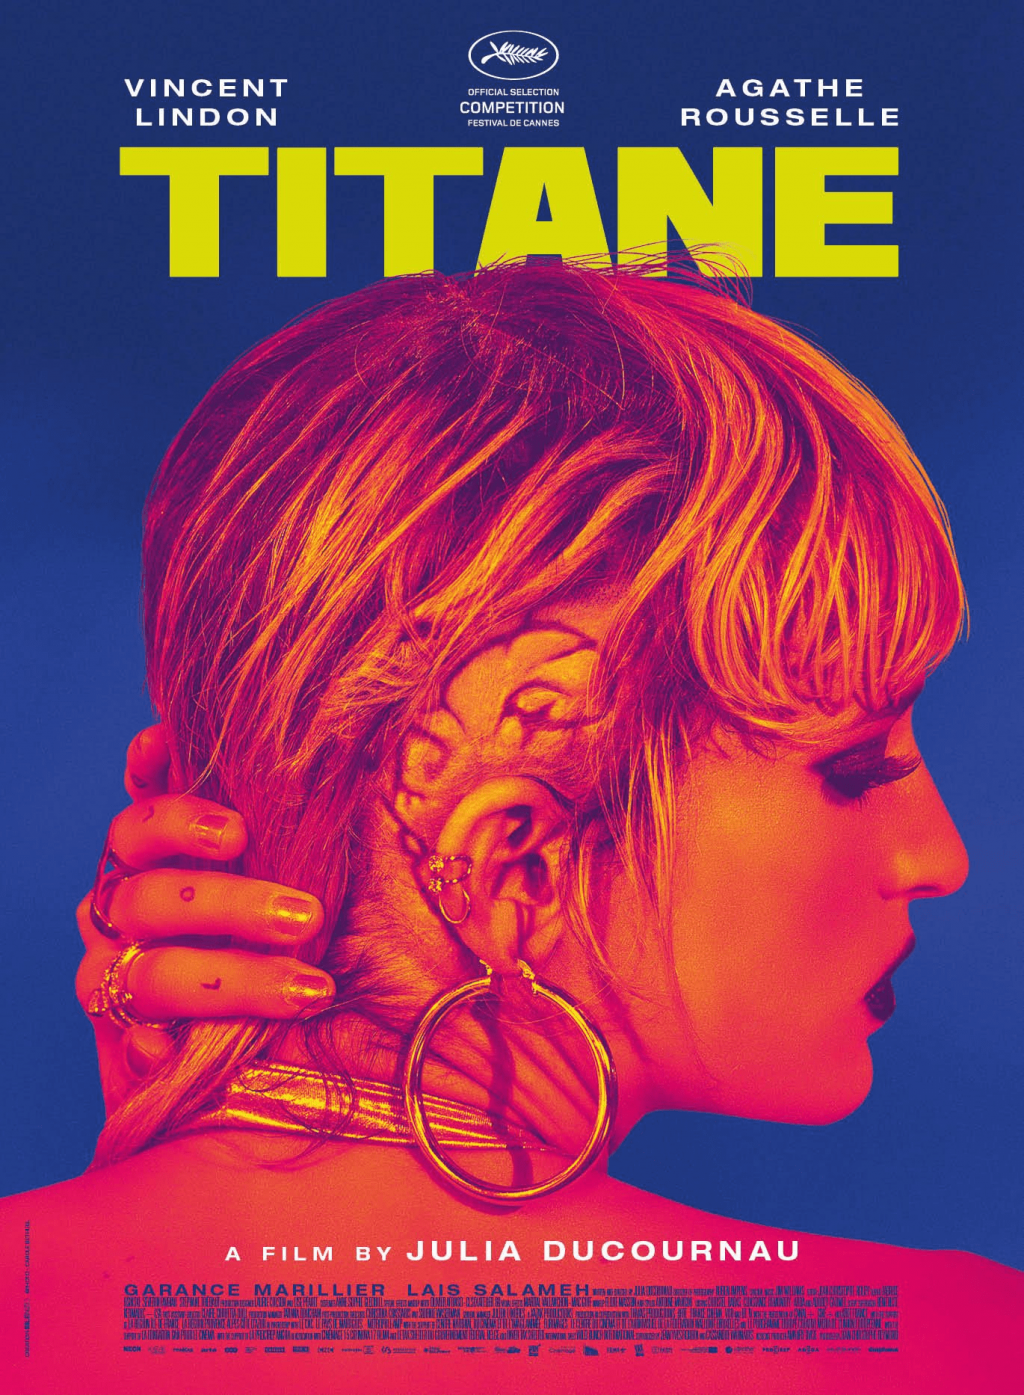 Vì sao khán giả vẫn chưa hết sốc với 'Titane' - bộ phim về tình dục vừa lên ngôi tại Cannes 2021?